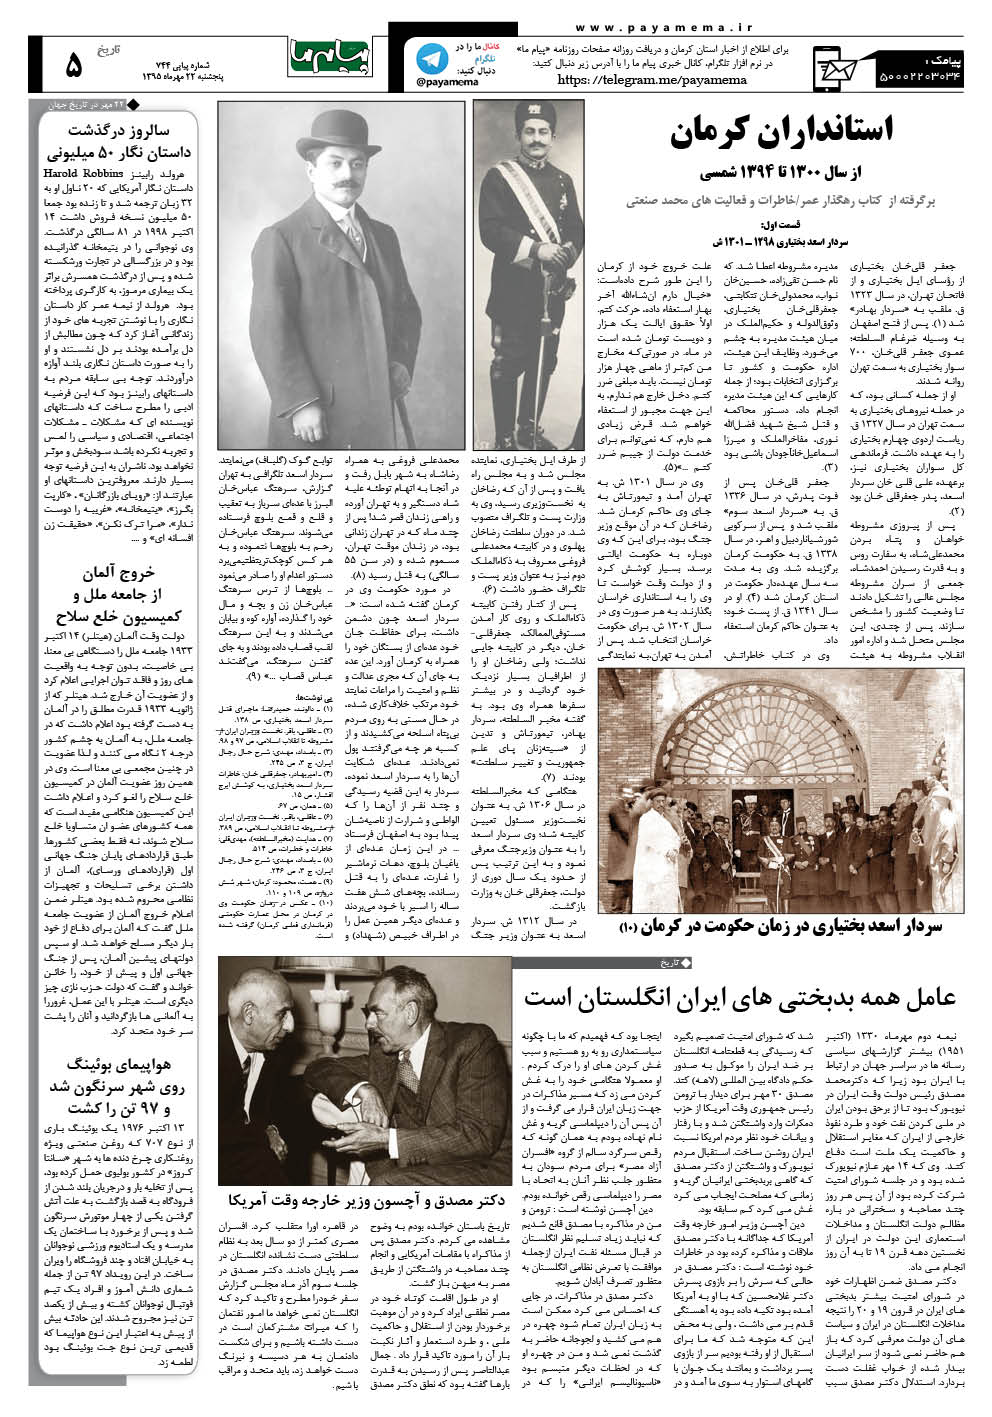 صفحه تاریخ کرمان شماره 744 روزنامه پیام ما